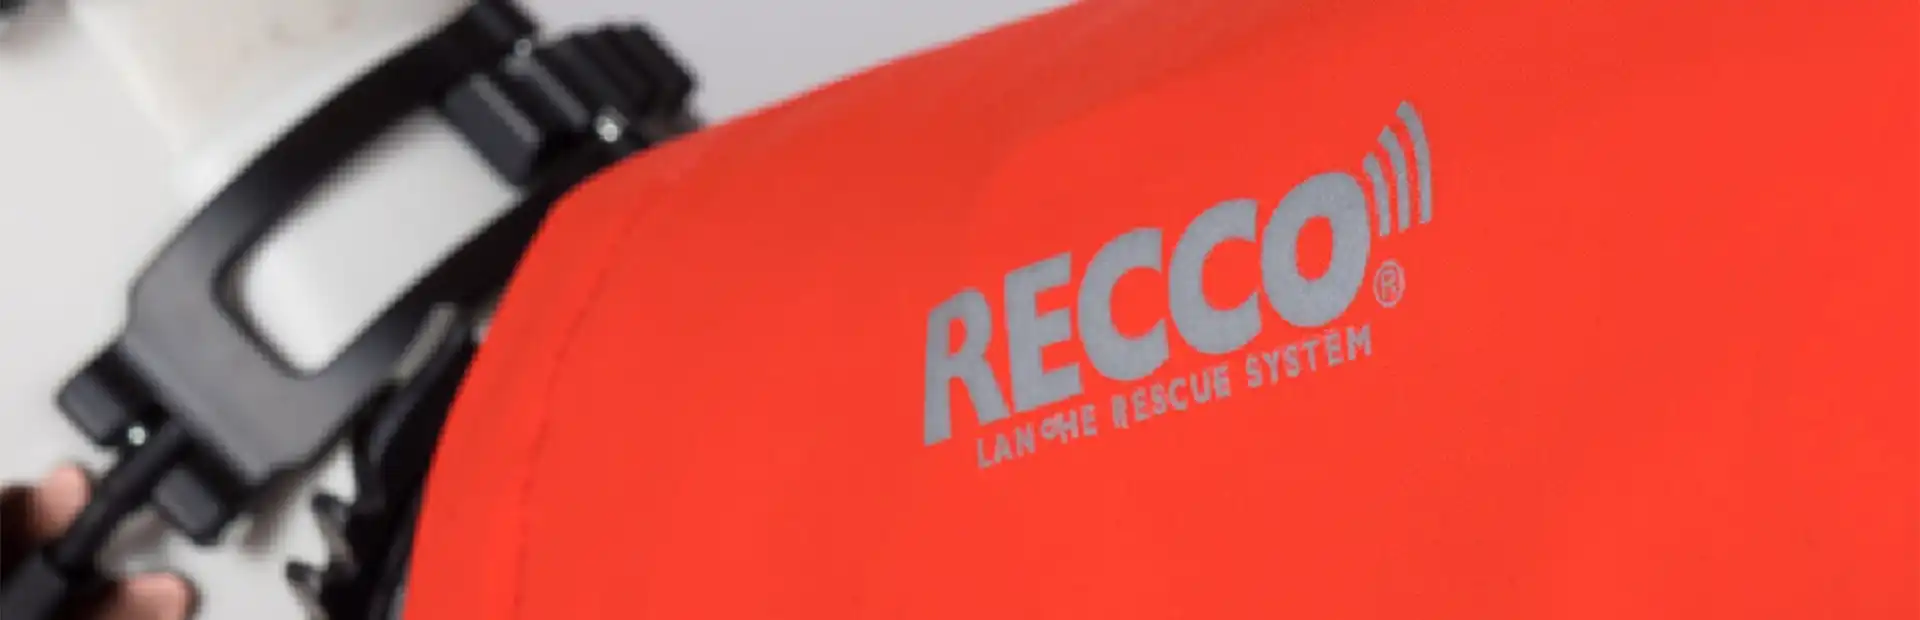 RECCO® - vyhledávací systém